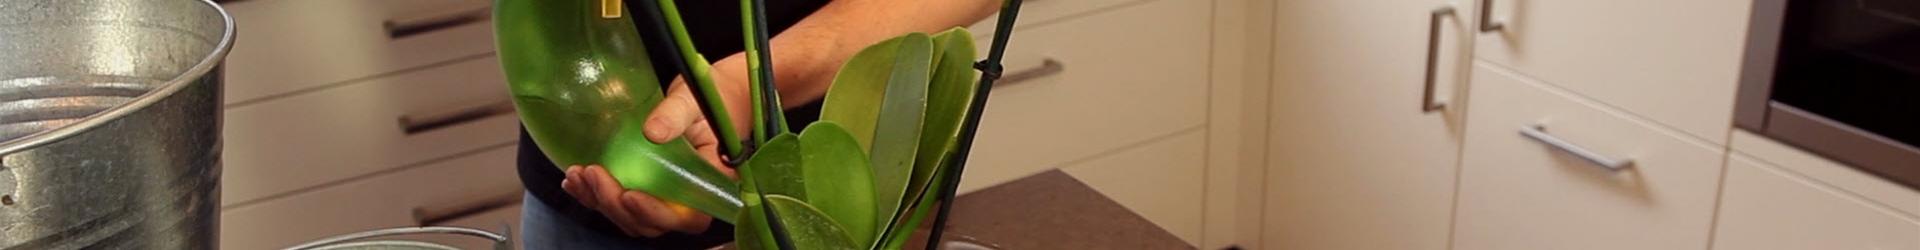 Orchidee - Einpflanzen in ein Gefäß (thumbnail).jpg